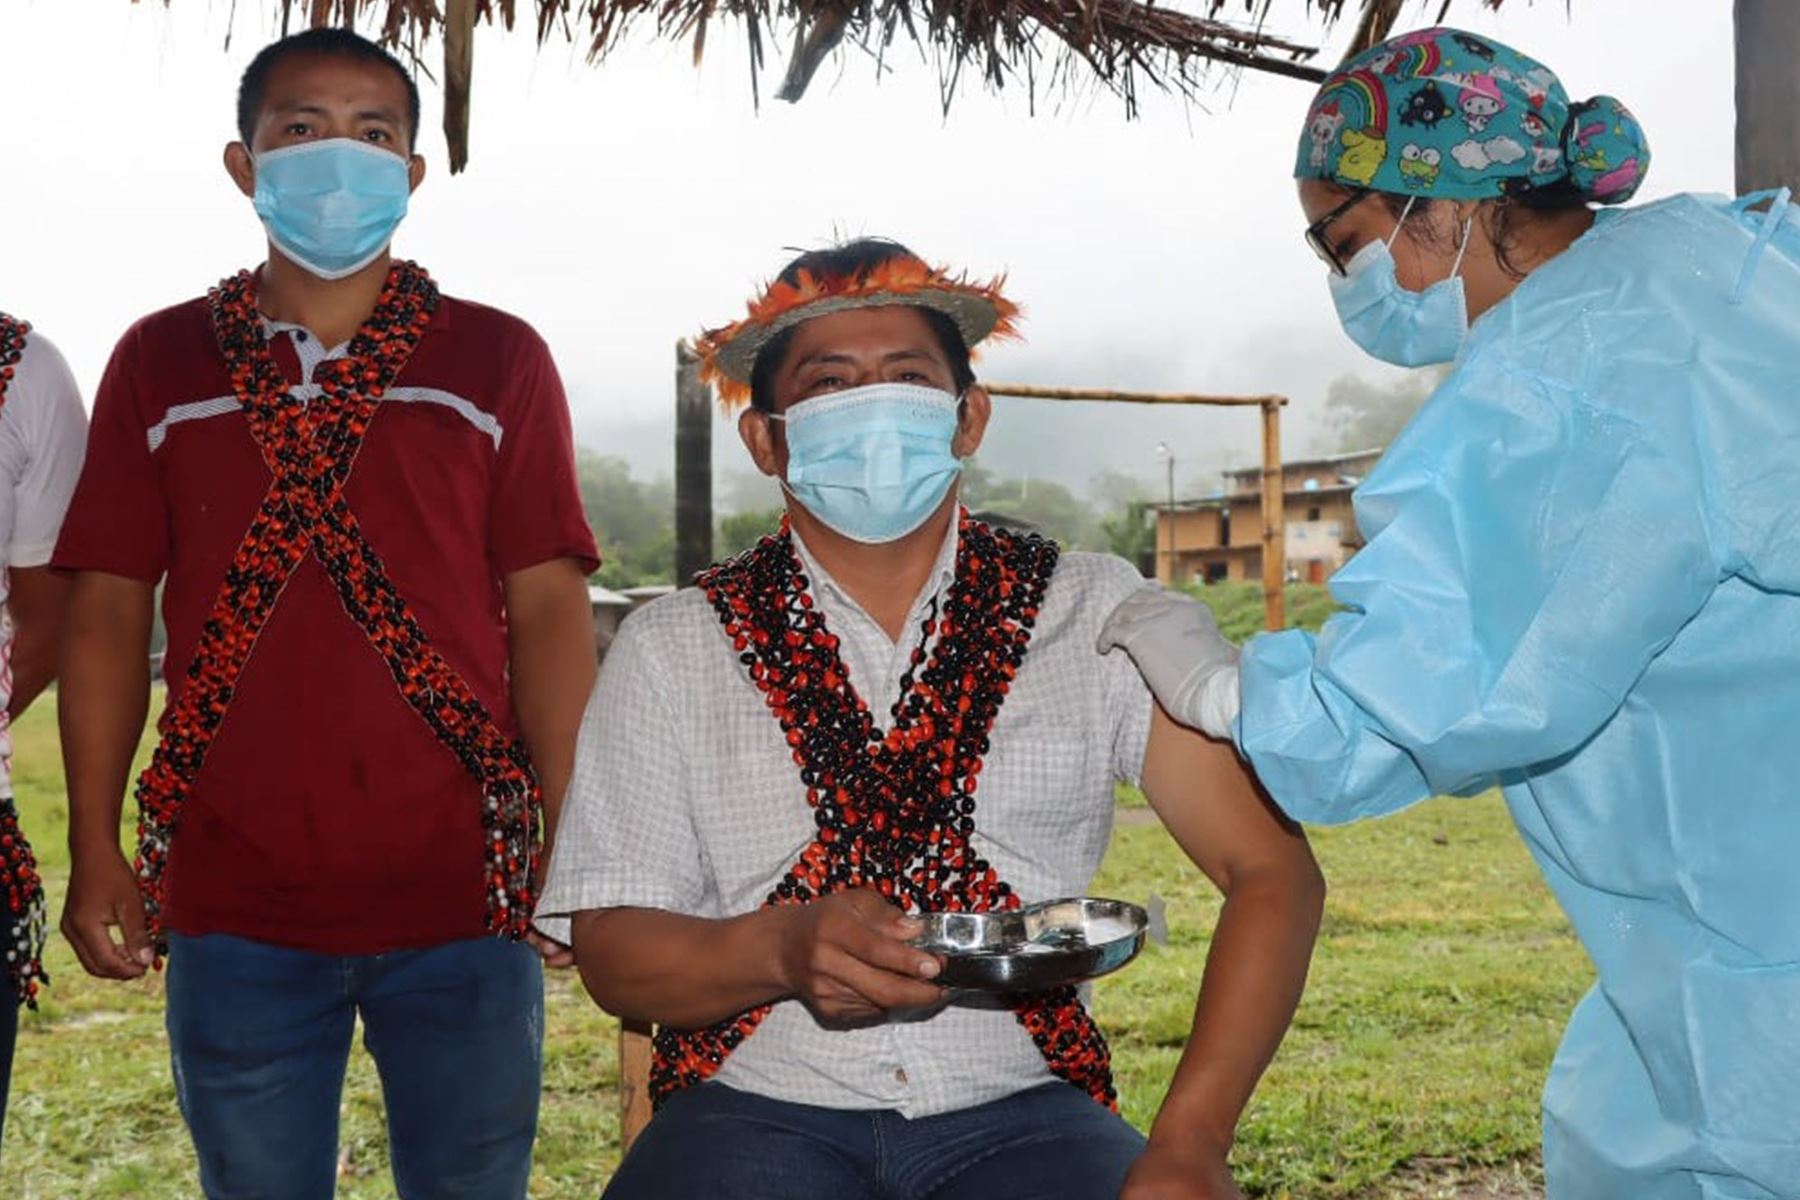 El apu awajún Román Jempekit Petsá fue el primero en ser inoculado contra el covid-18 en el centro poblado Awajún Naranjos, región Cajamarca. Foto: ANDINA/Minsa